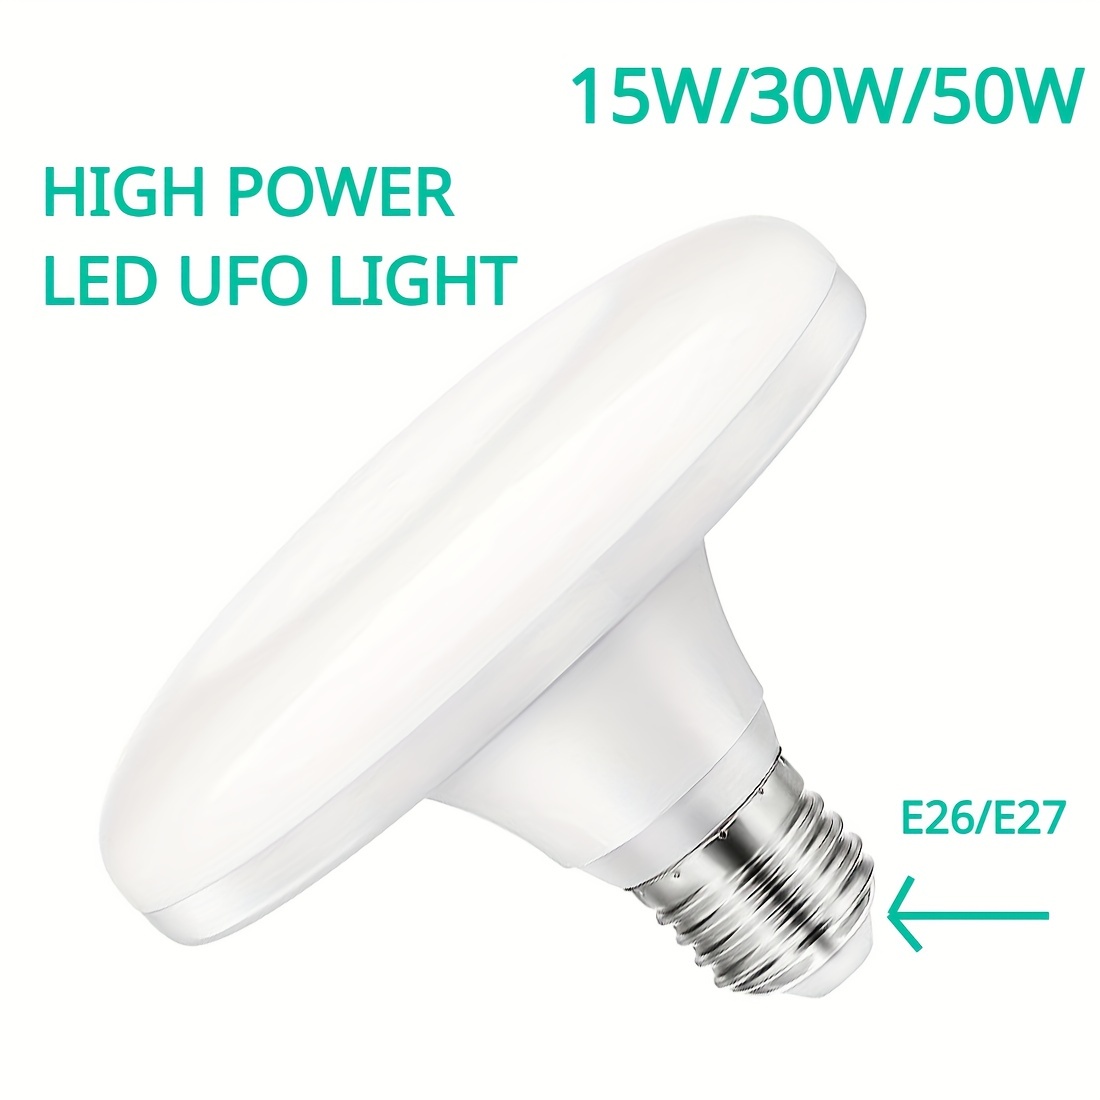 Ampoule LED E27, lampe OVNI plate, adaptée pour l'éclairage de la